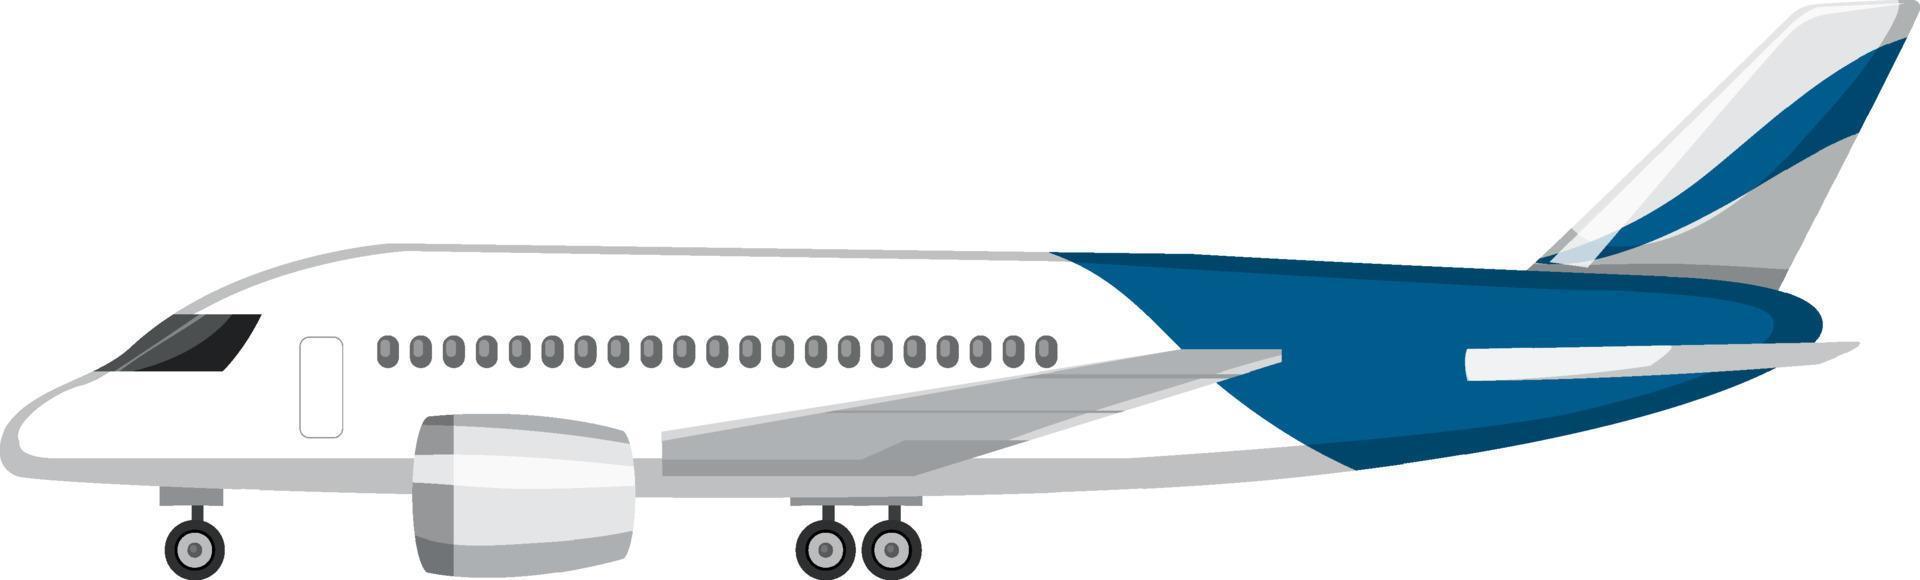 um avião em estilo cartoon isolado vetor